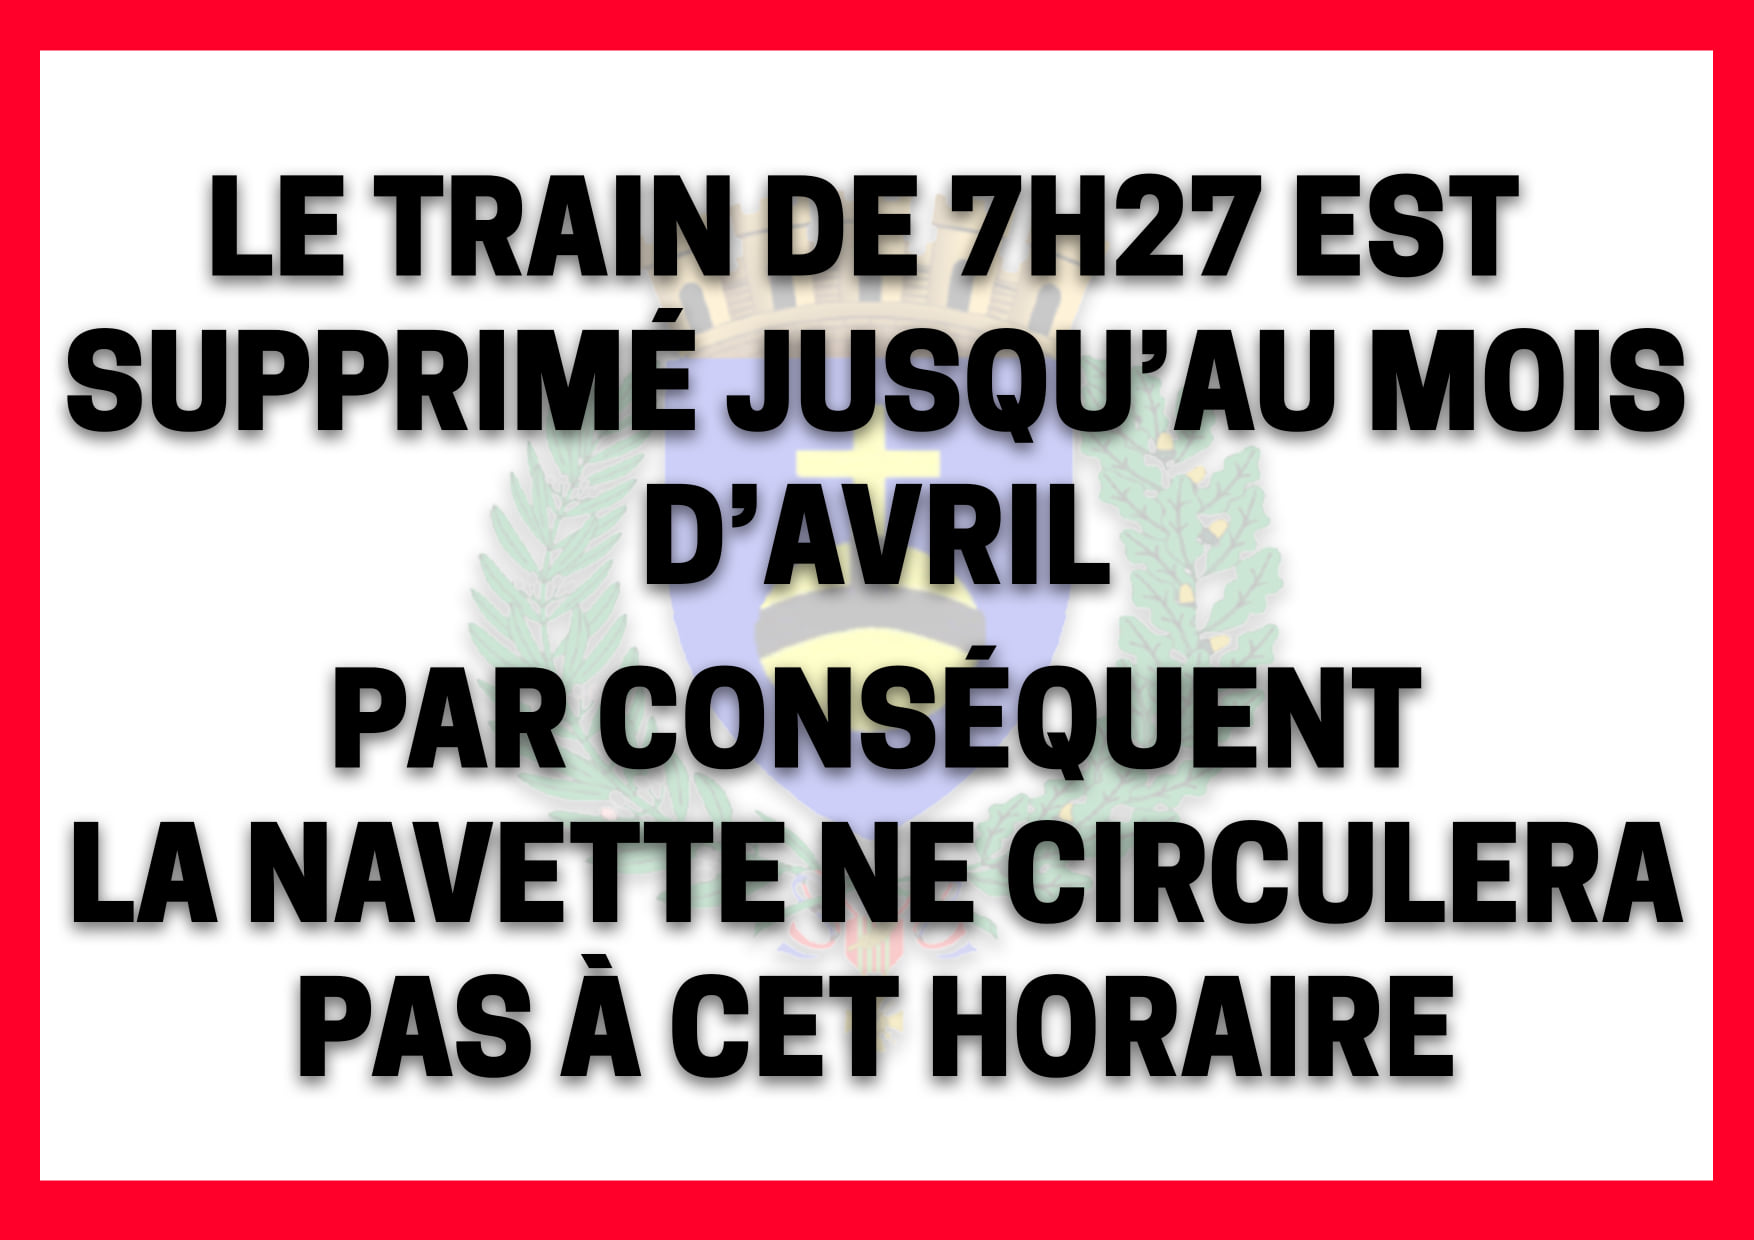 Info gare : suspension du train de 7h27 jusqu'au mois d'avril